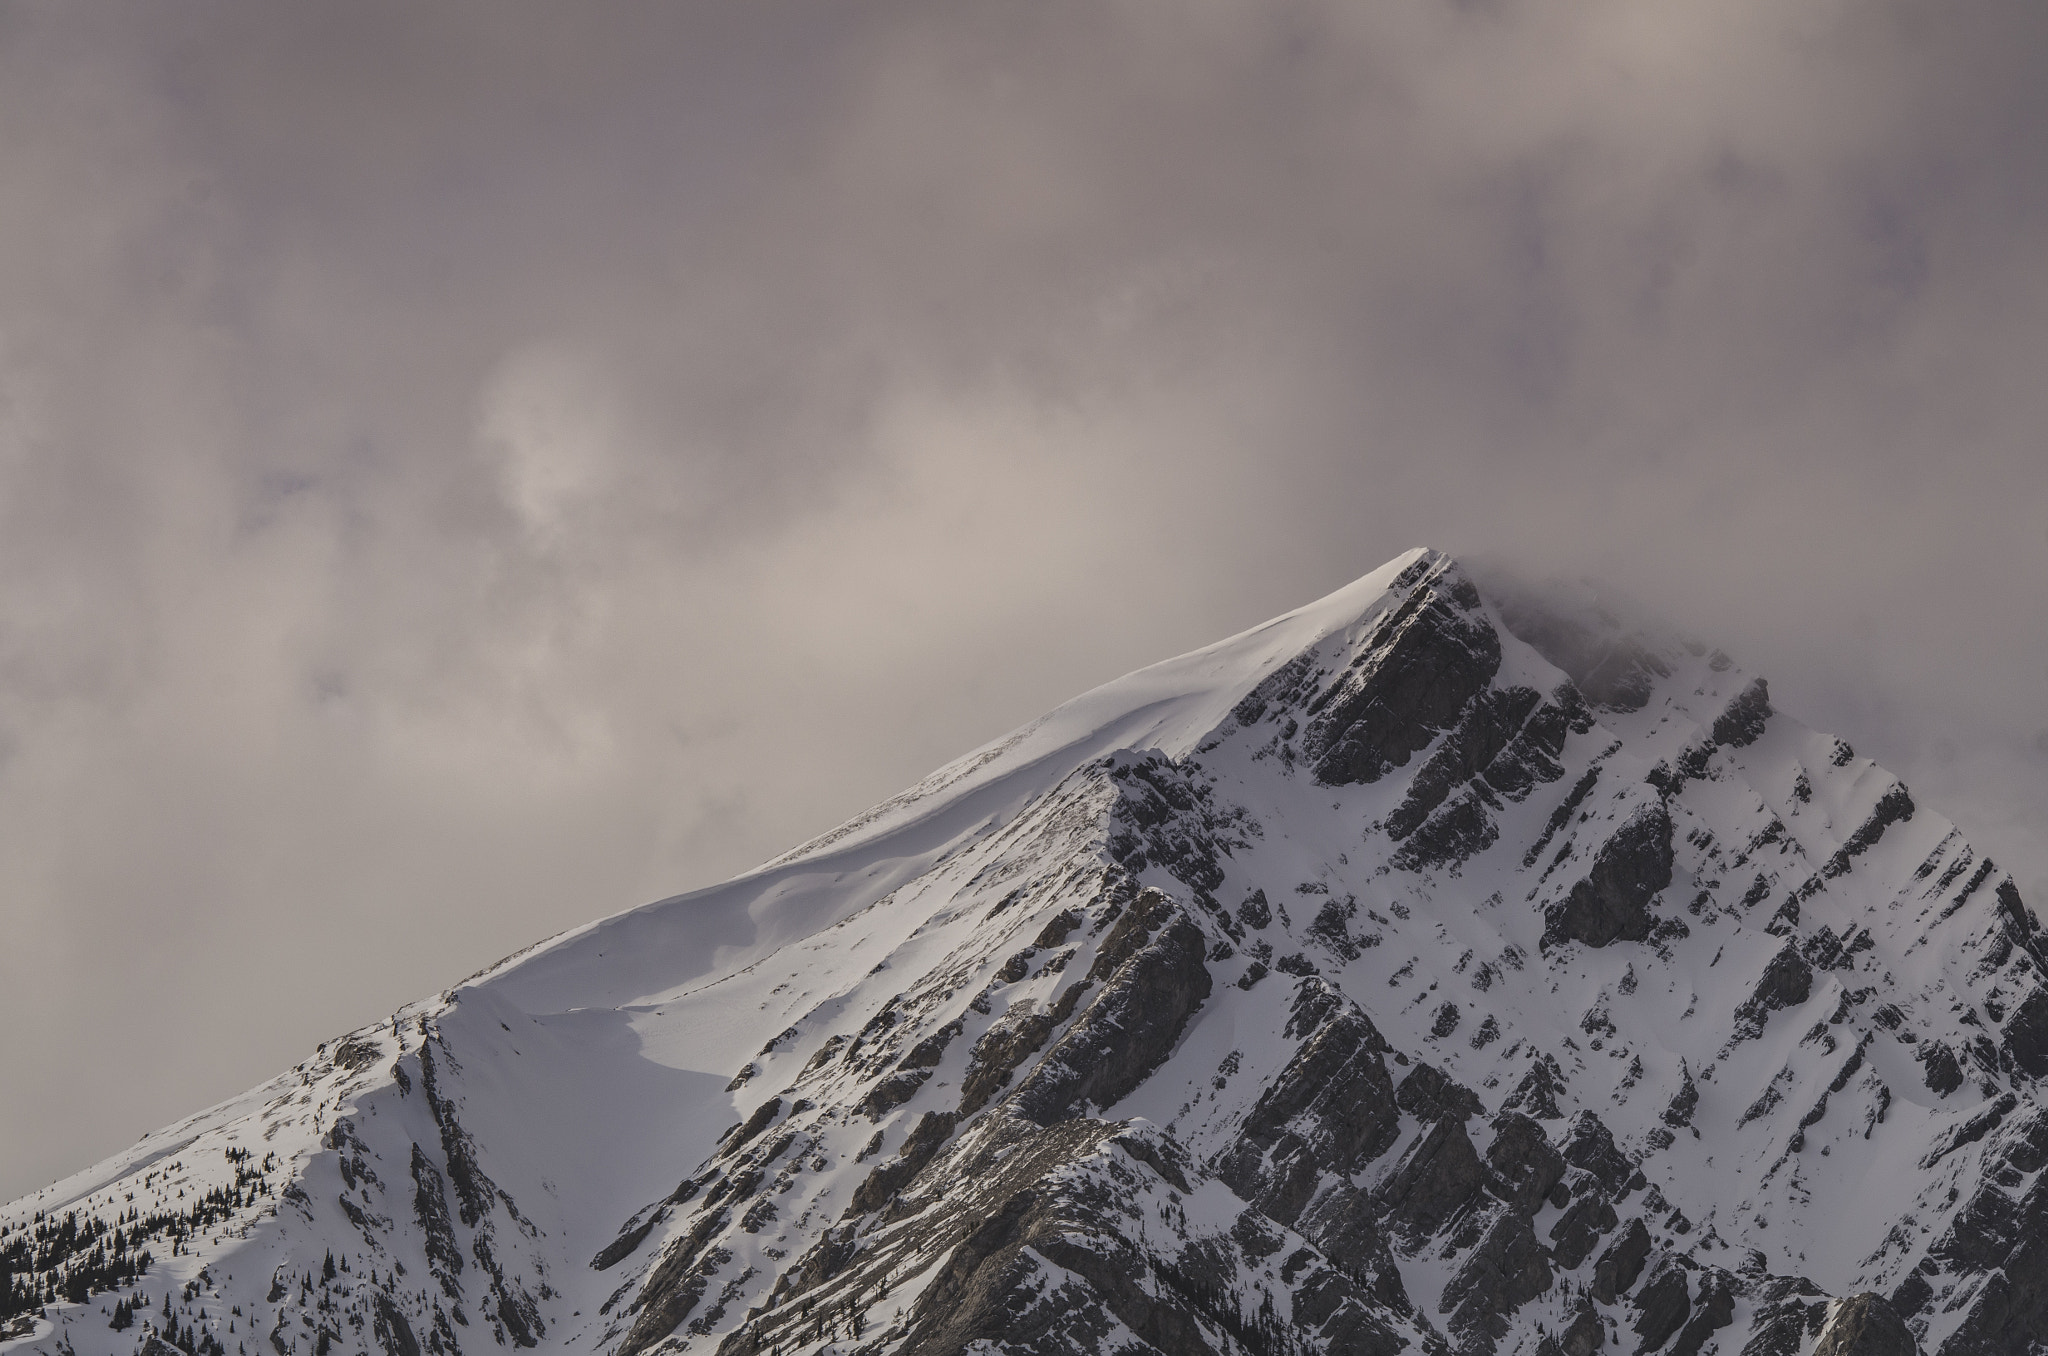 AF Nikkor 70-210mm f/4-5.6D sample photo. Mountain landscapes photography